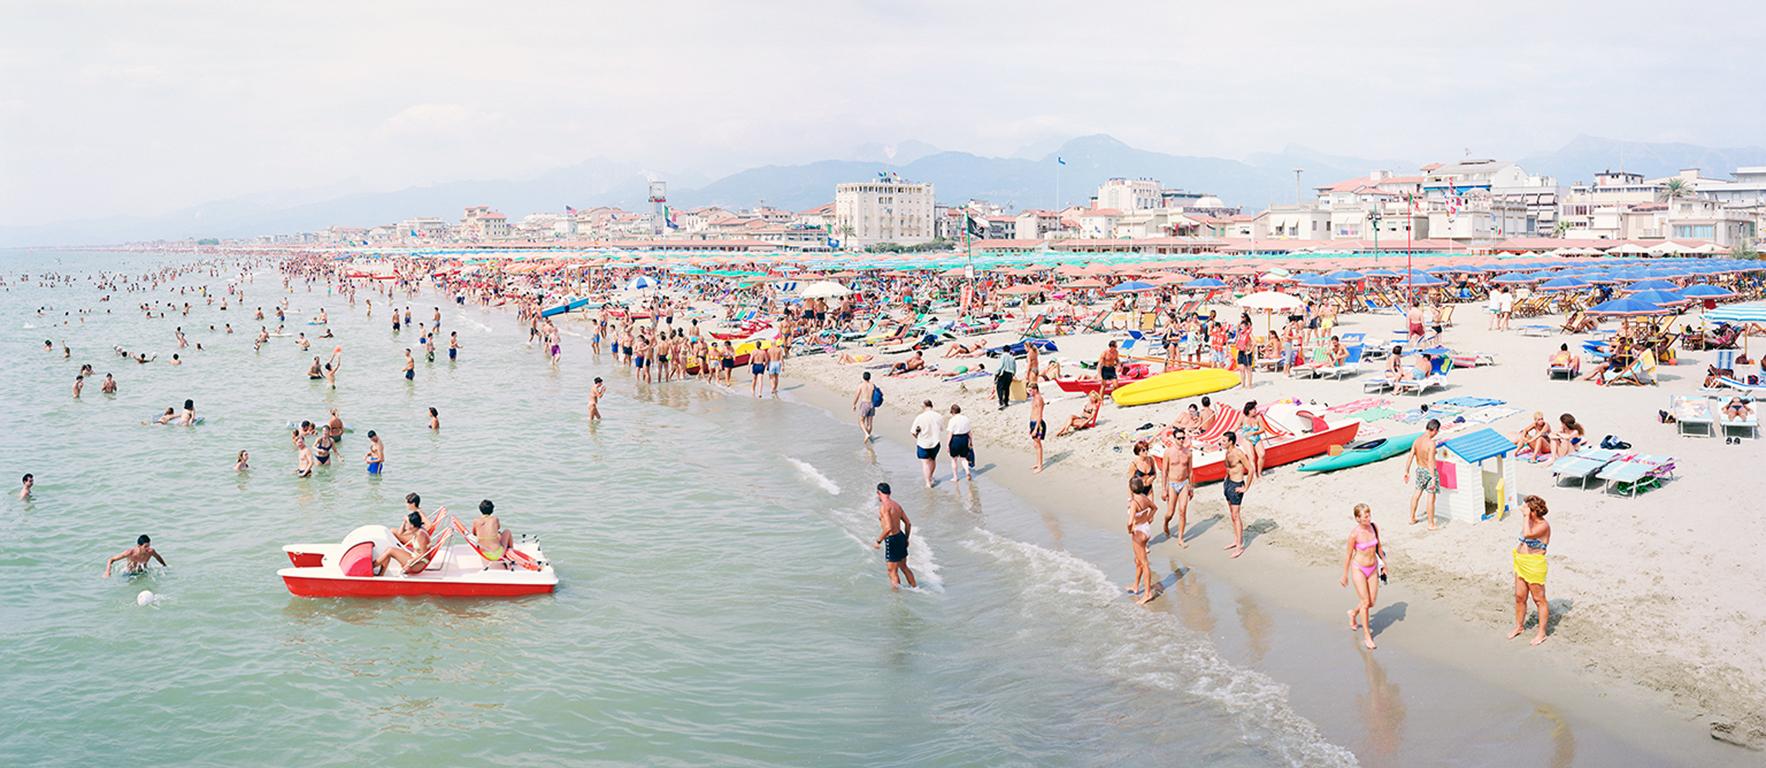 Massimo Vitali Landscape Photograph - Viareggio Pano (framed) - unique panoramic photograph of Mediterranean beach 